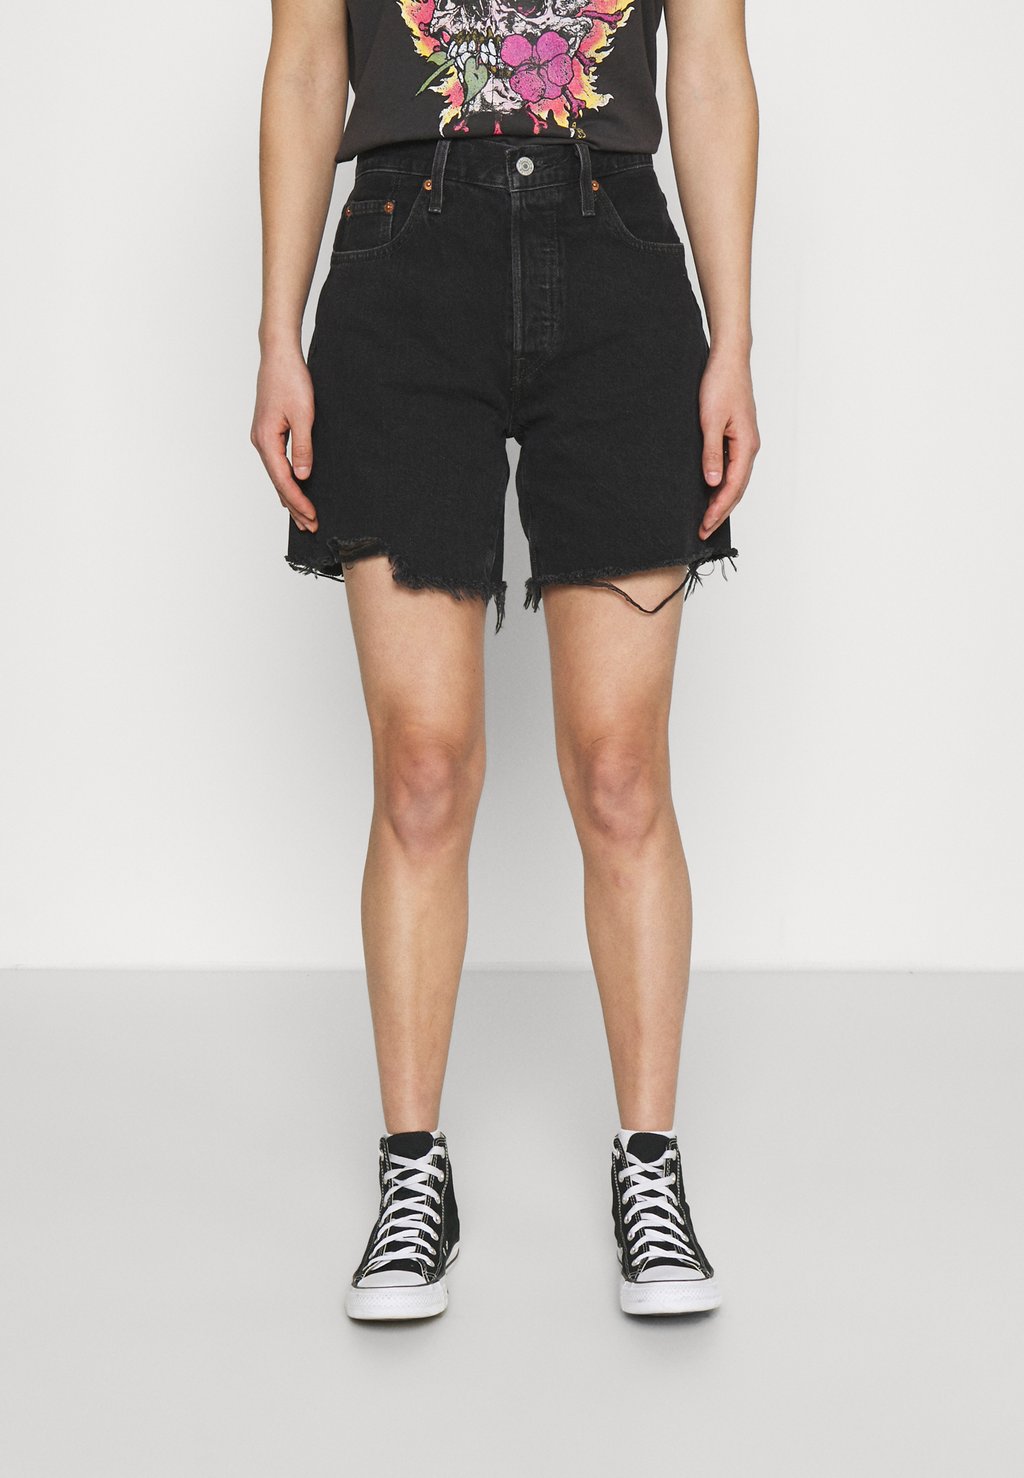 Джинсовые шорты Levi's 501 Mid Thigh Shorts, лунно-черный